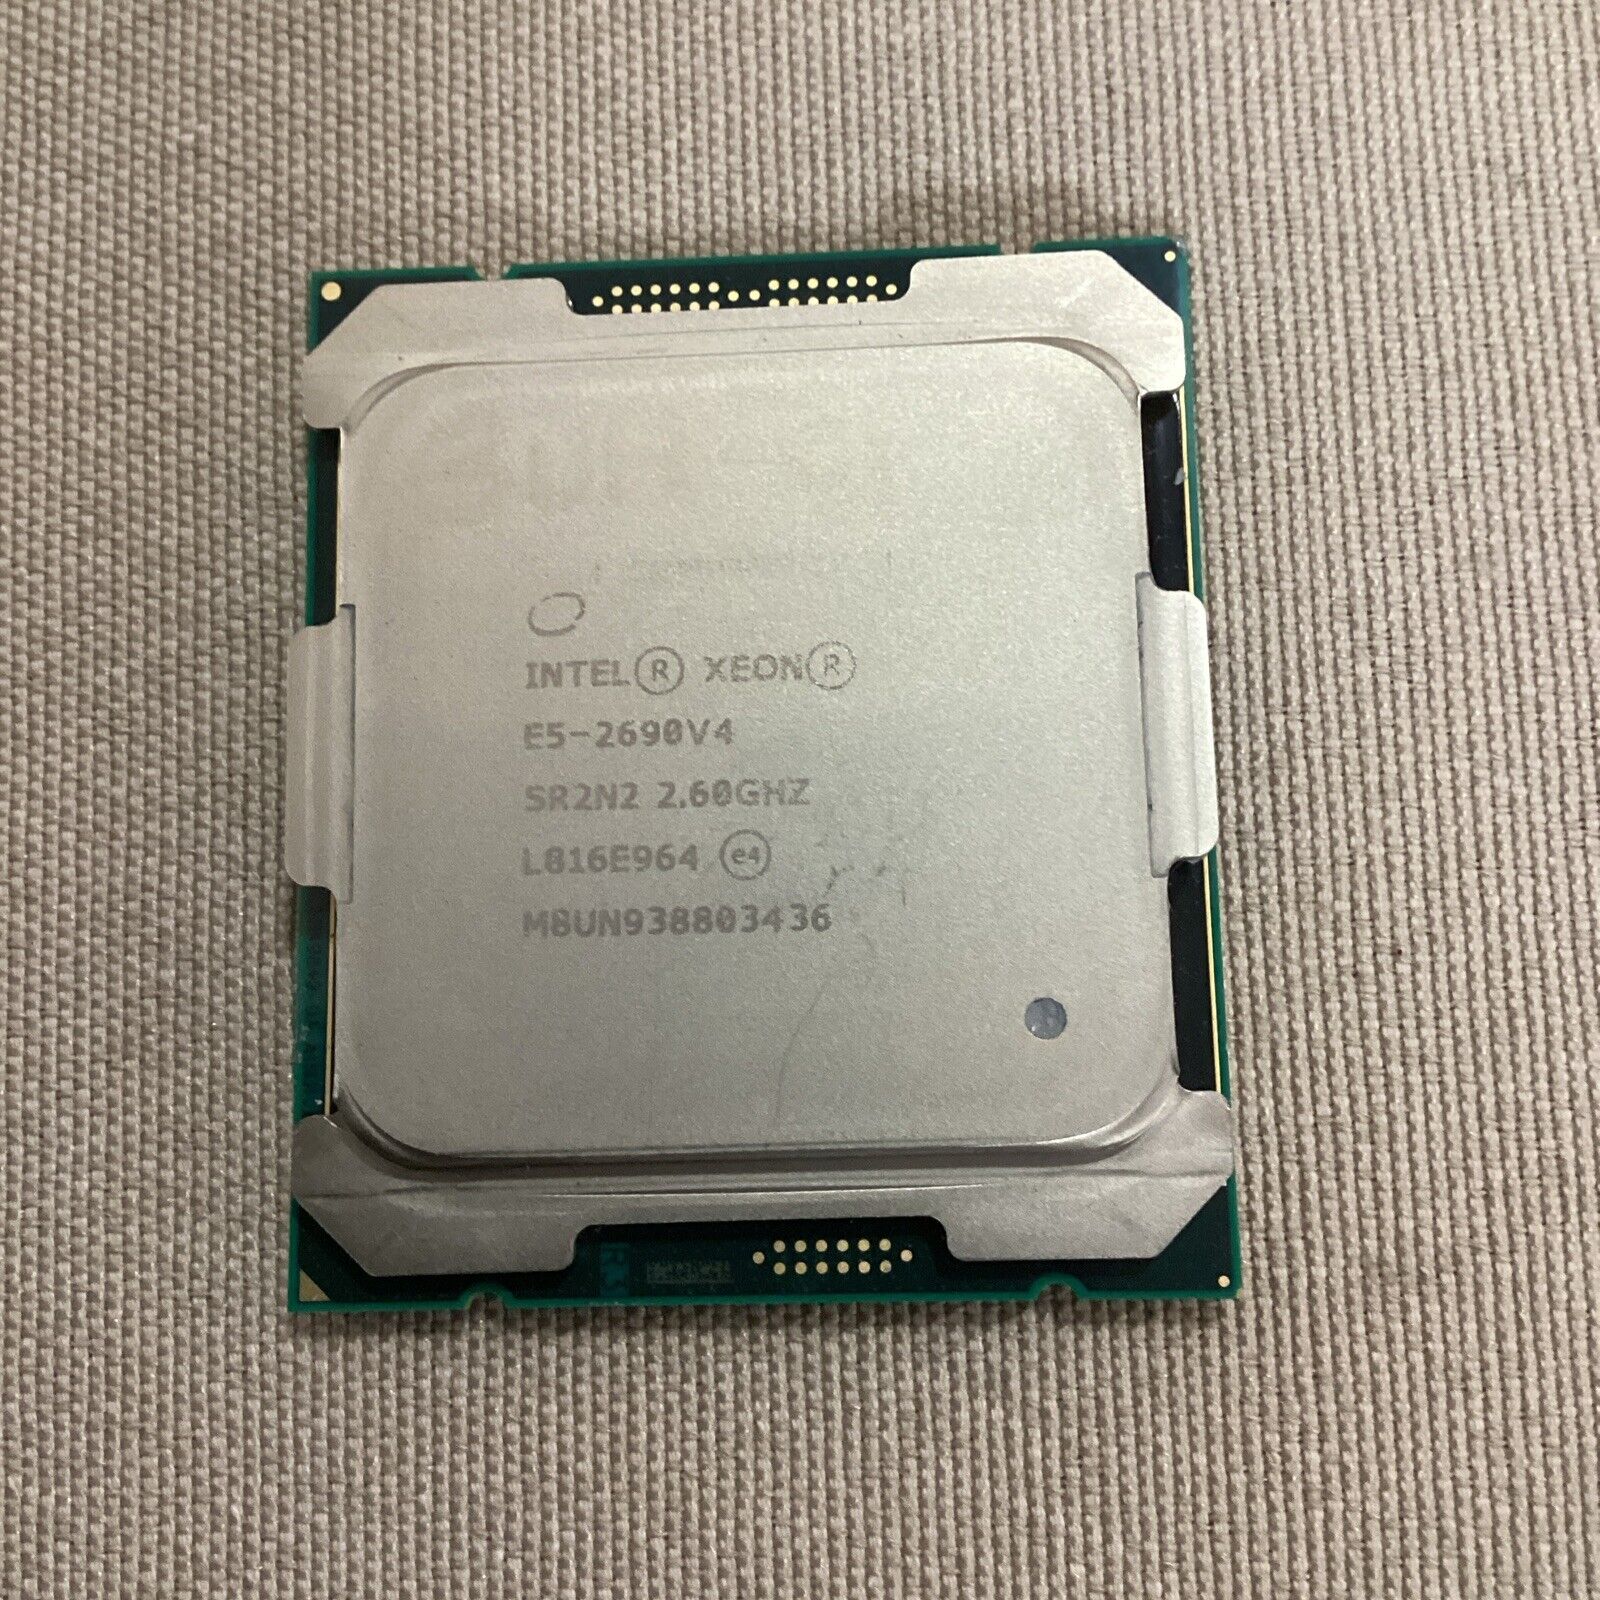 Intel Xeon E5-2690 V4 Core Processor